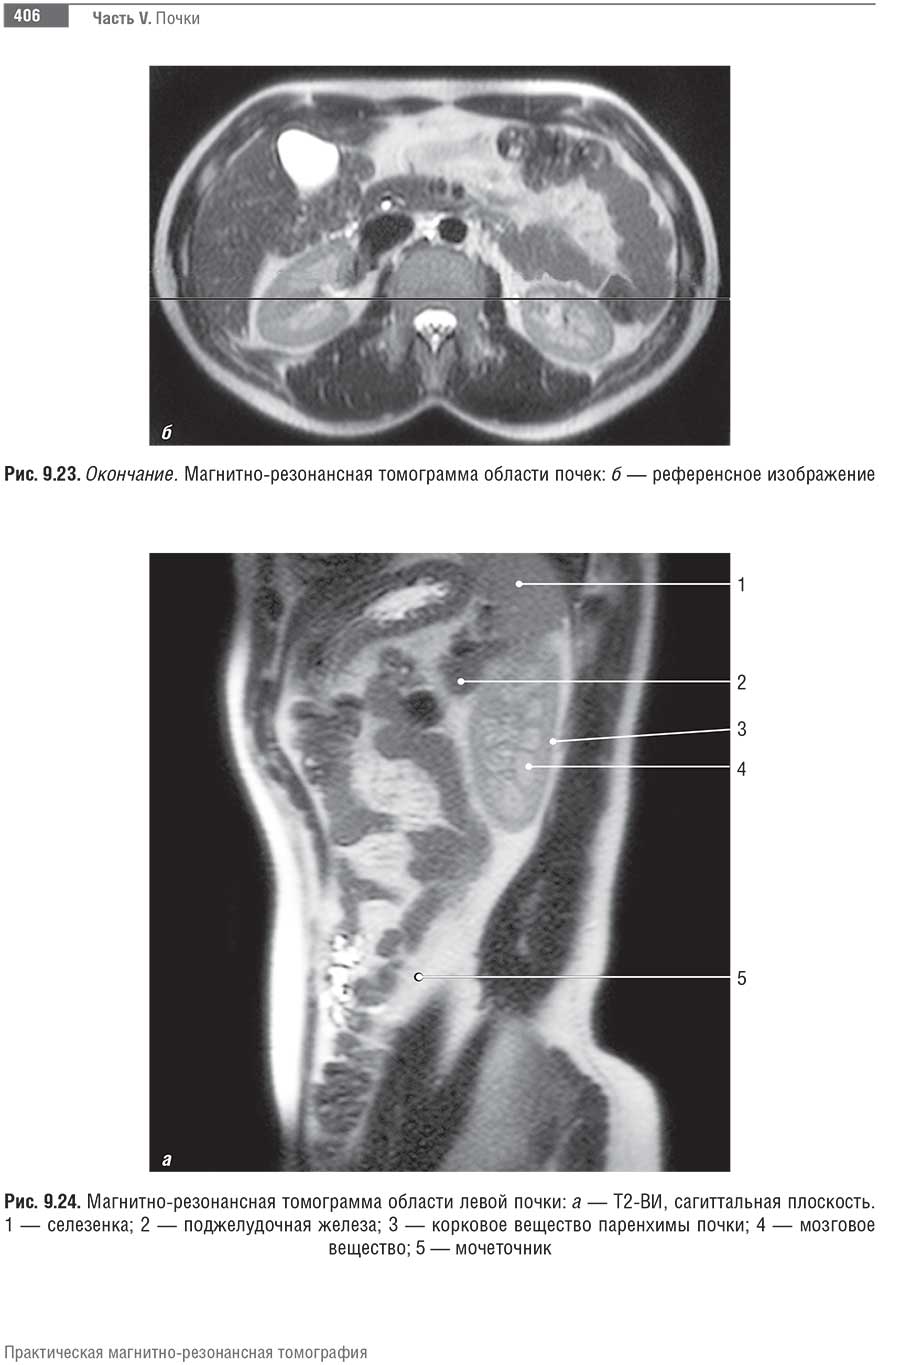 Магнитно-резонансная томограмма области левой почки